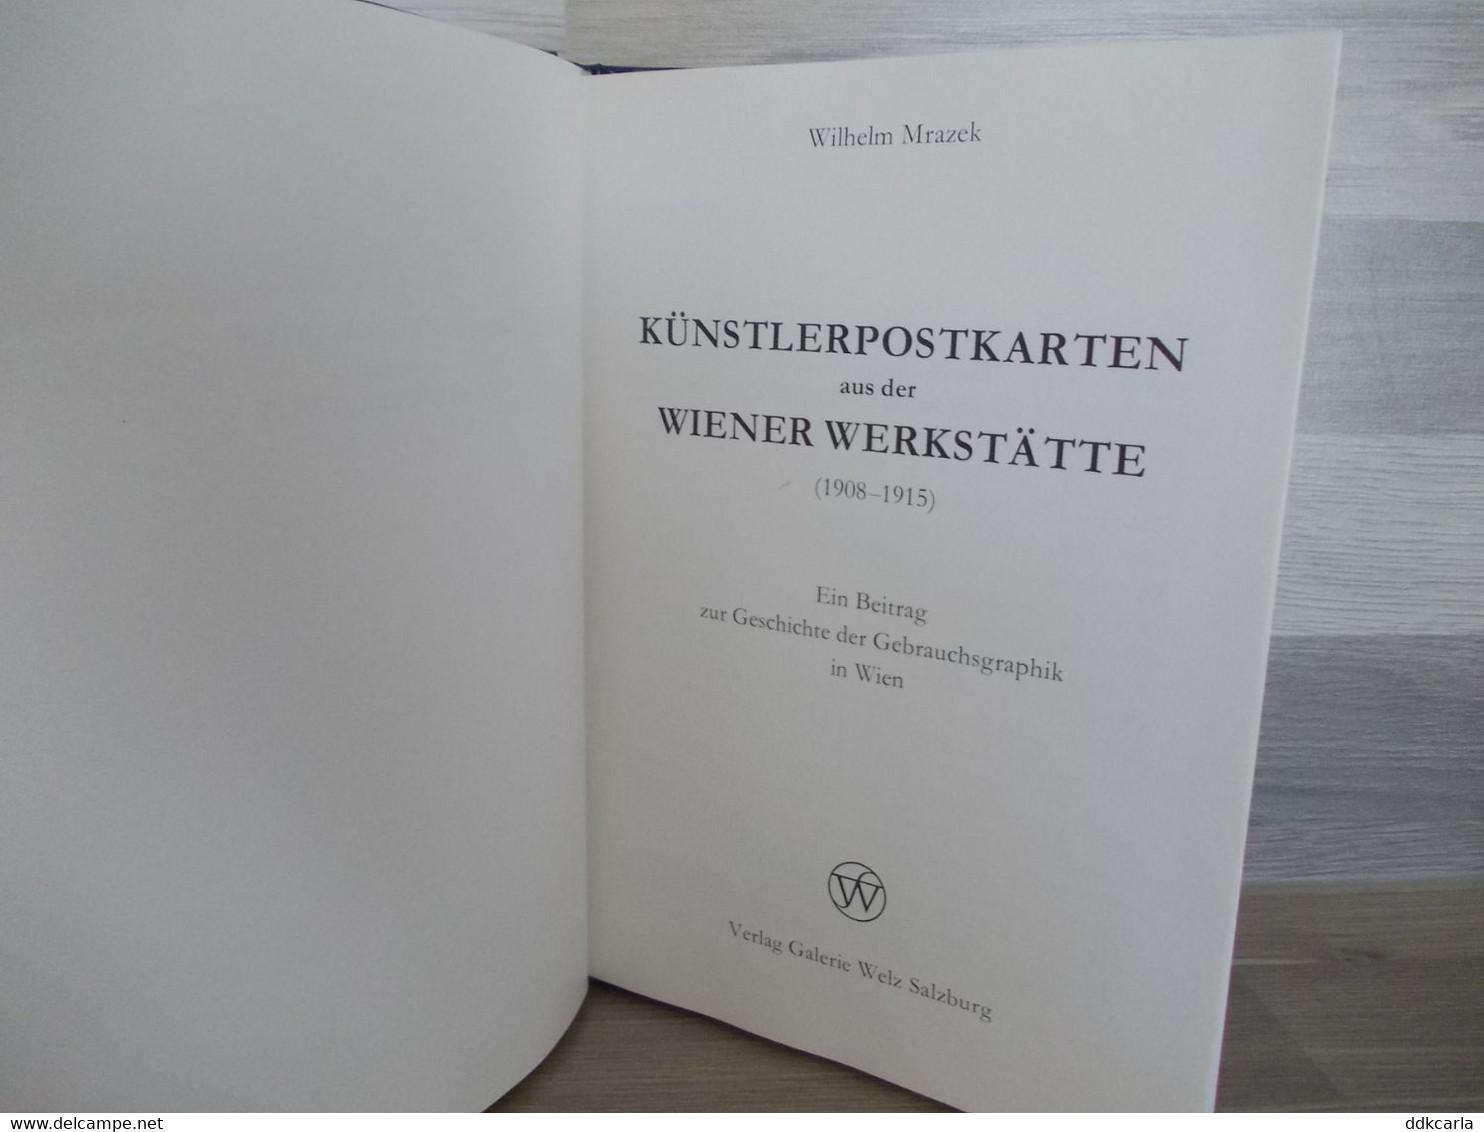 Künstlerpostkarten Aus Der Wiener Werkstätte (1908-1915) - Wilhelm Mrazek - 1Galerie Welz Salzburg - Arte